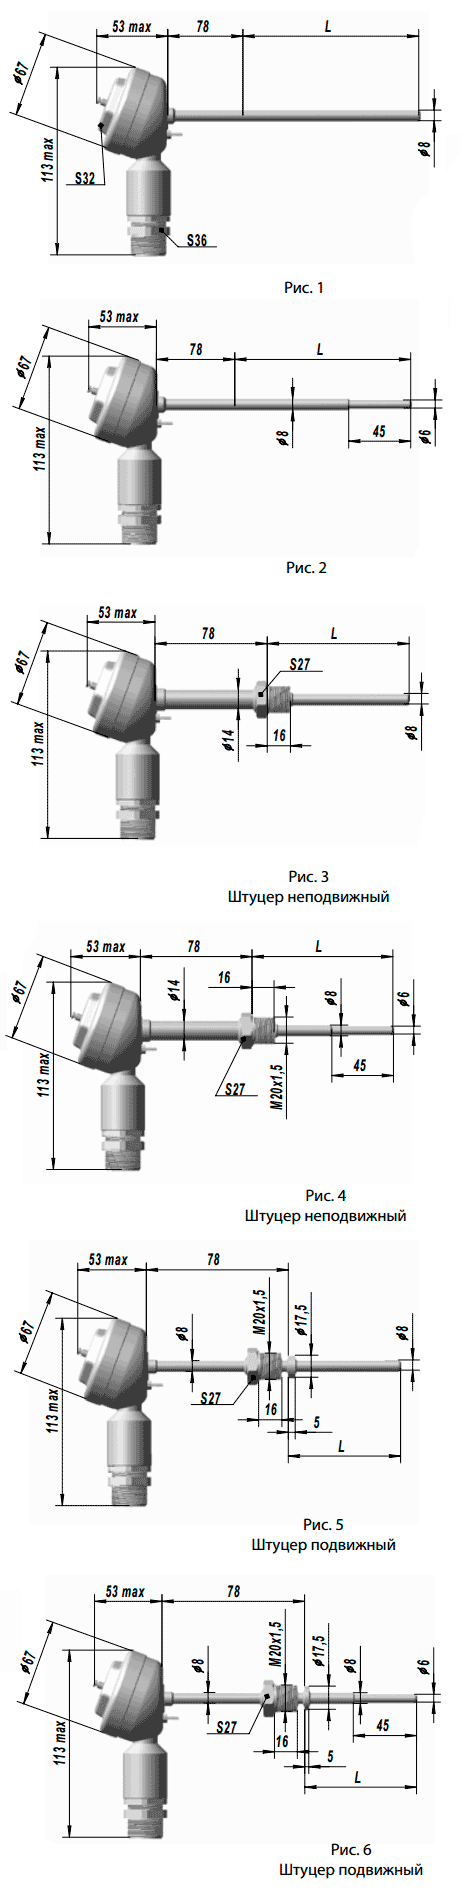 Габаритные размеры взрывозащищённого термопреобразователя с унифицированным выходным сигналом ТСПУ 9418, ТСМУ 9418